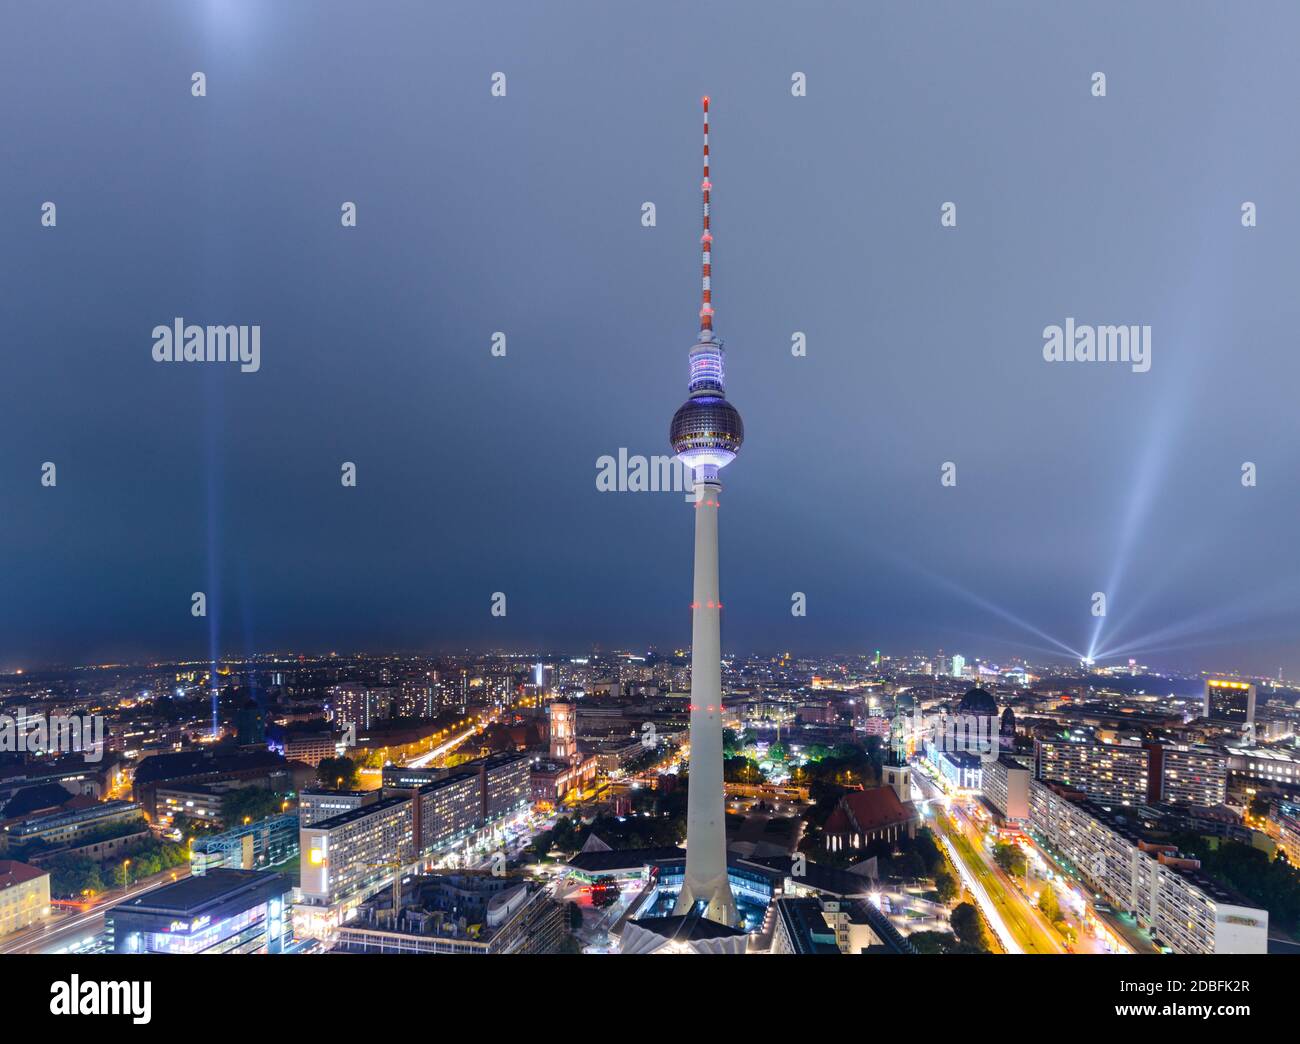 Berlin, Deutschland - 5. Oktober 2013: Der Fernsehturm, ein berühmtes Berliner Wahrzeichen, wird während des Light Fest 2013 bei Nacht in Berlin beleuchtet Stockfoto